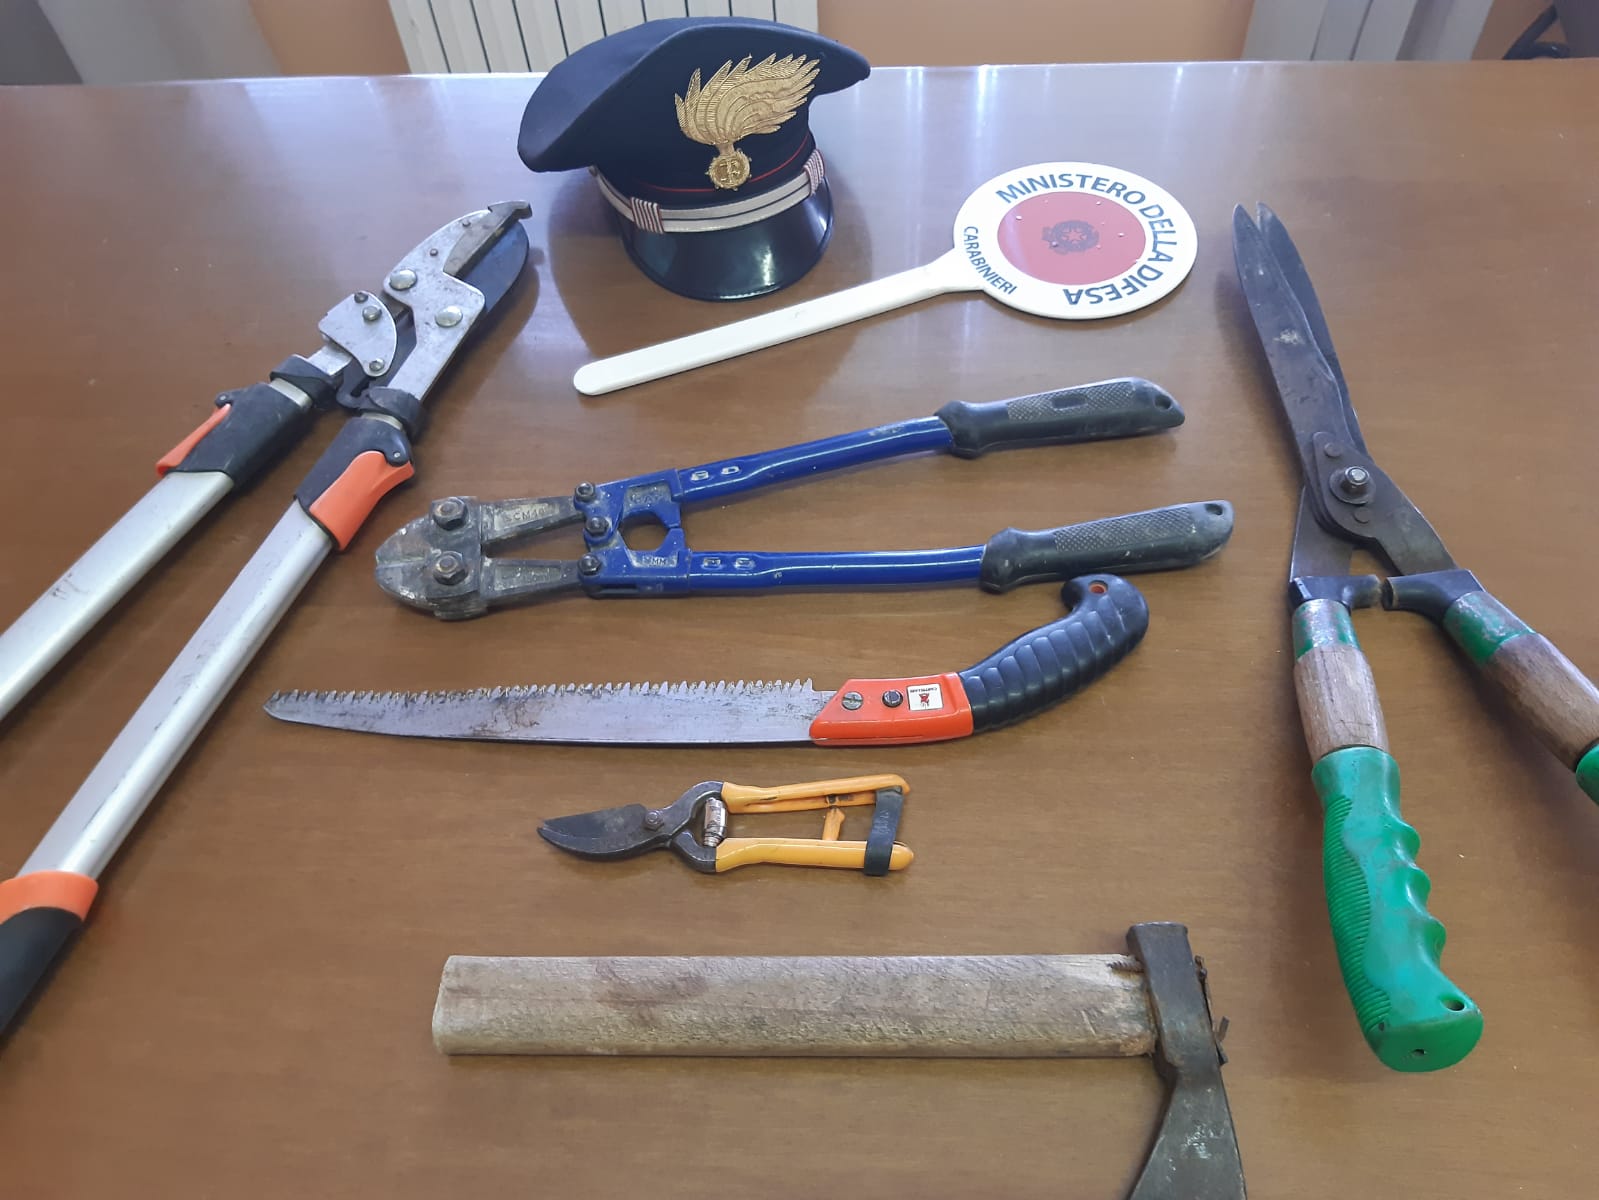 Buonalbergo| I Carabinieri sventano alcuni furti, foglio di via per due uomini